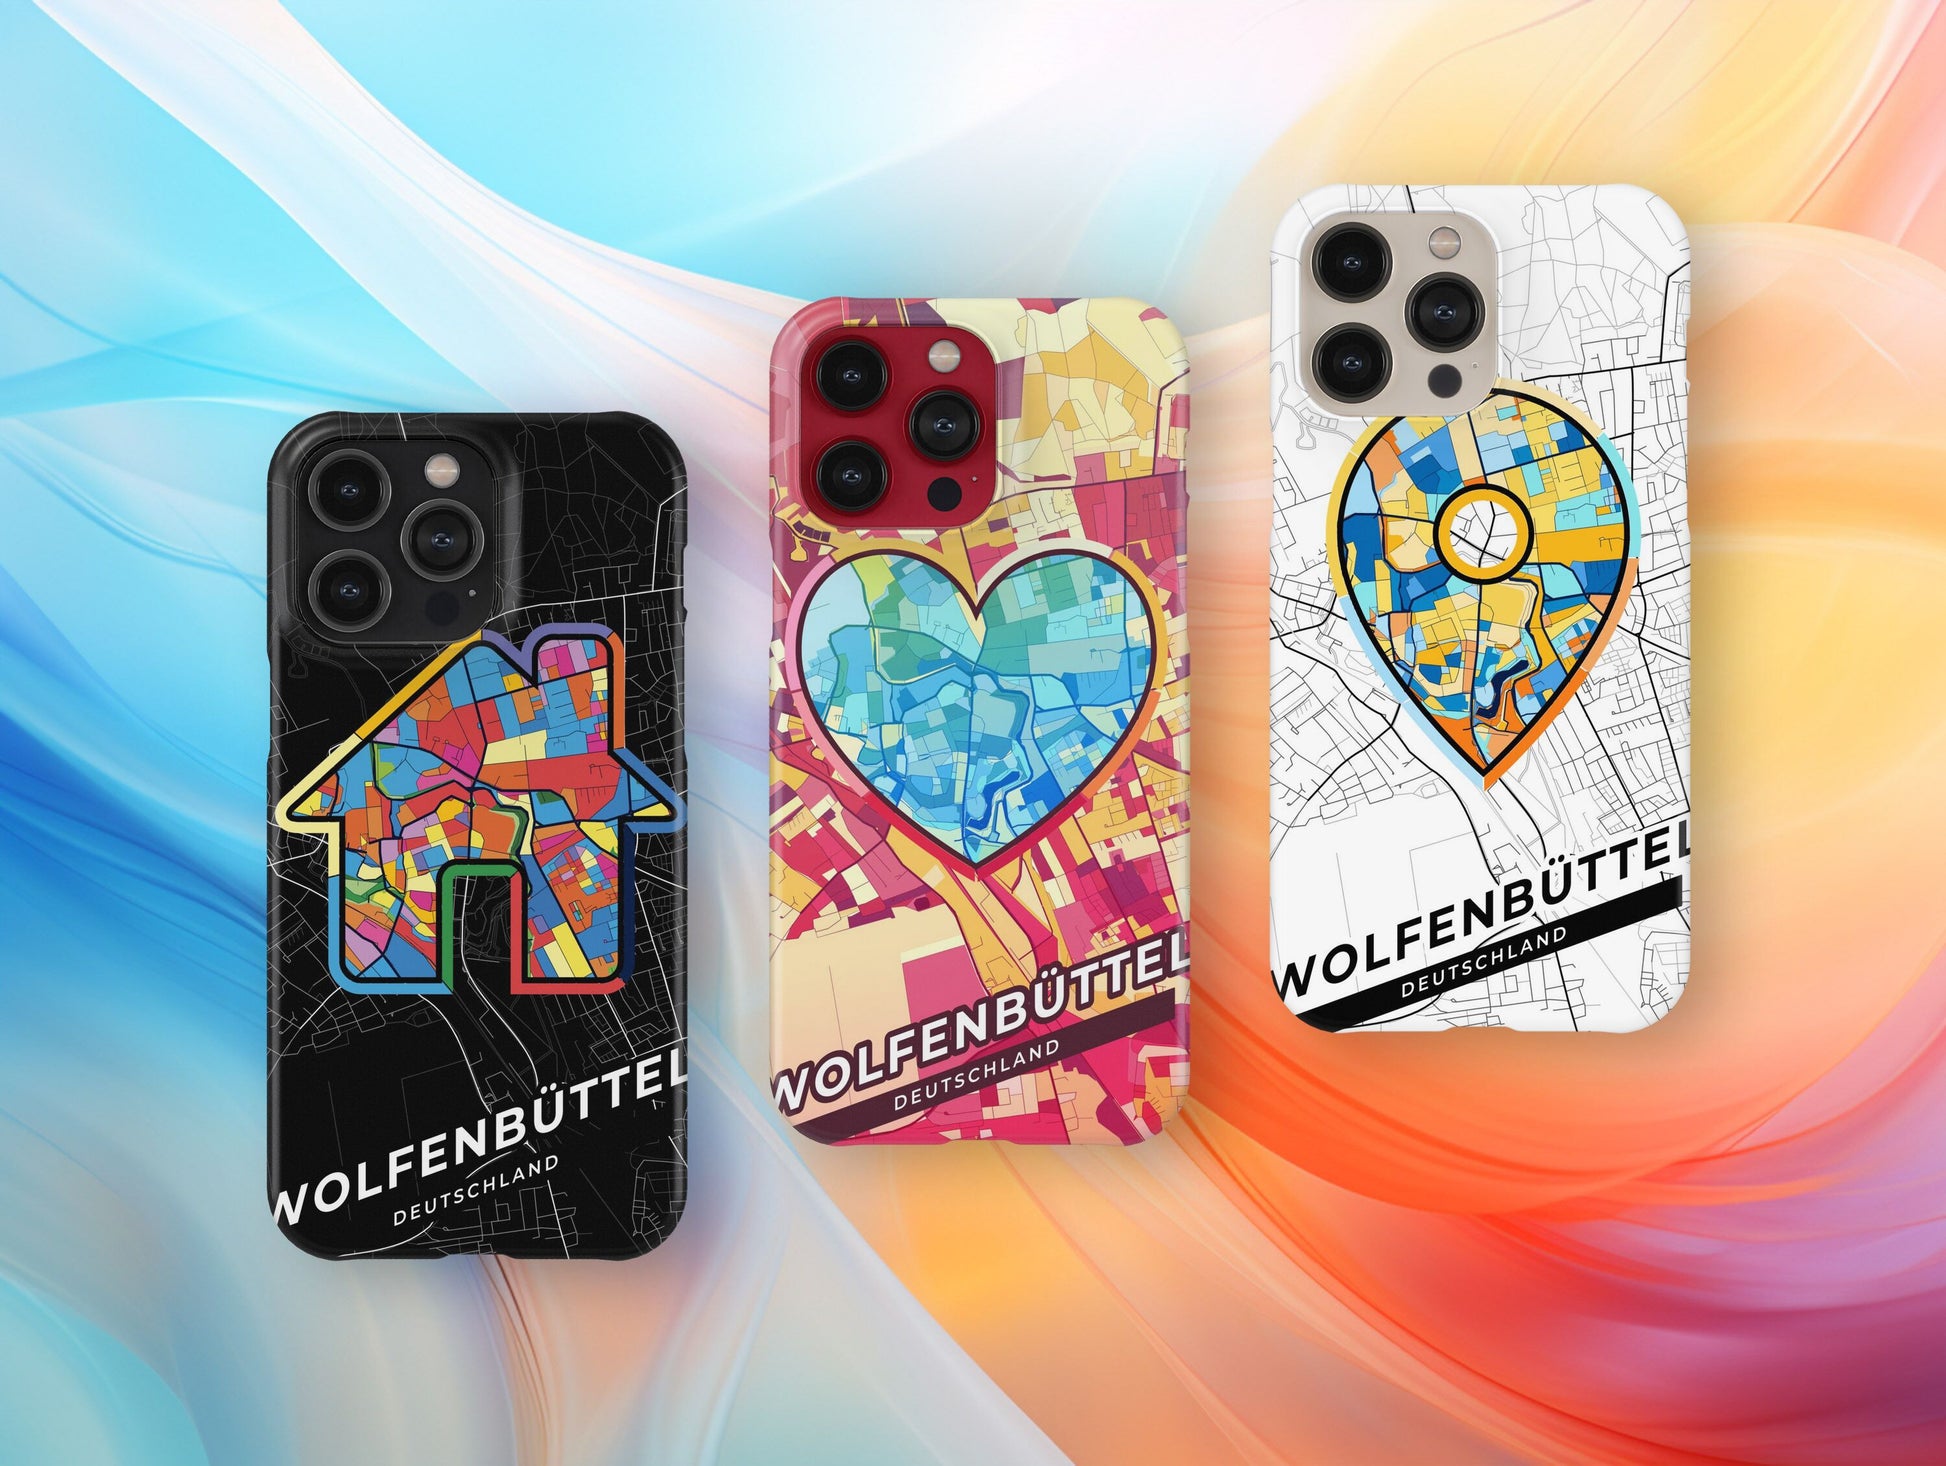 Wolfenbüttel Deutschland slim phone case with colorful icon